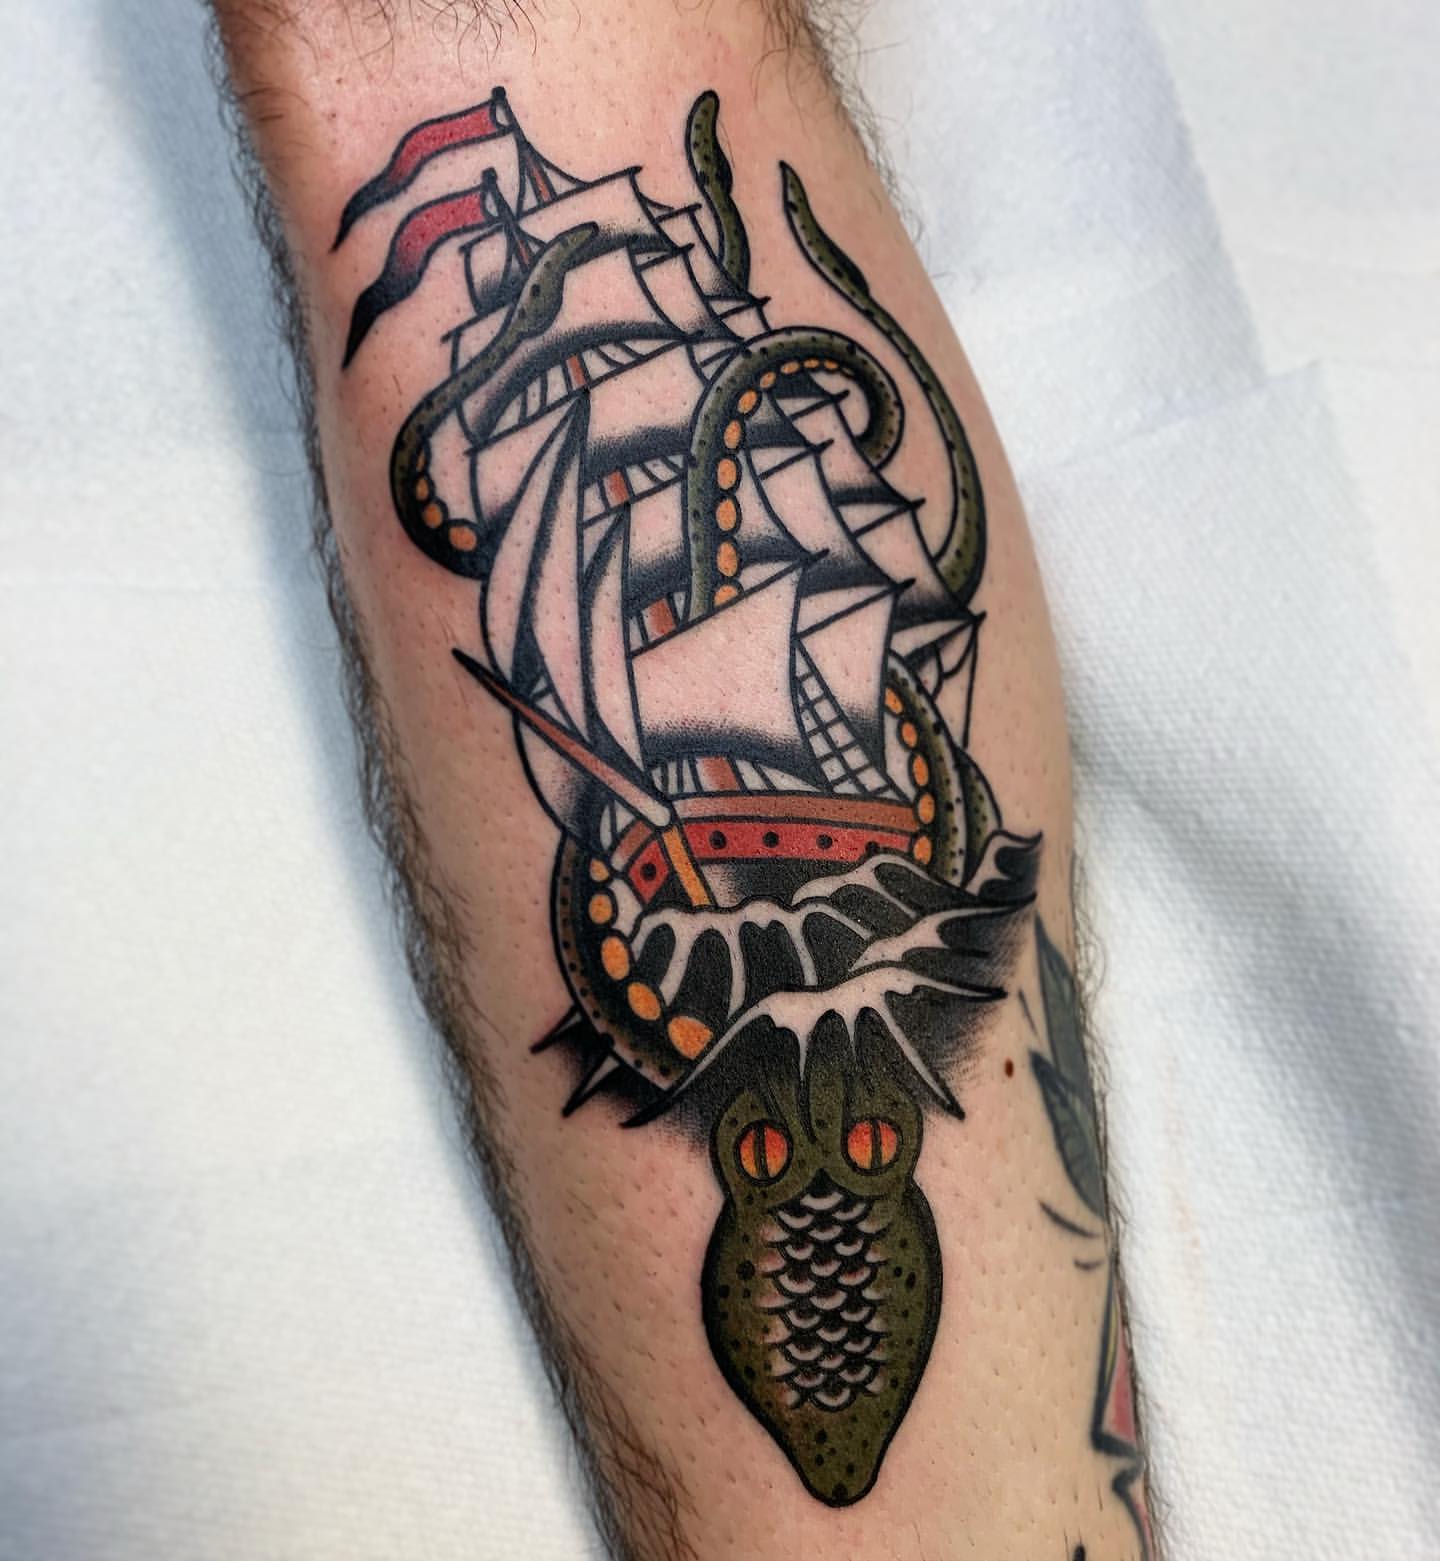 Kraken Tattoo Ideas 2